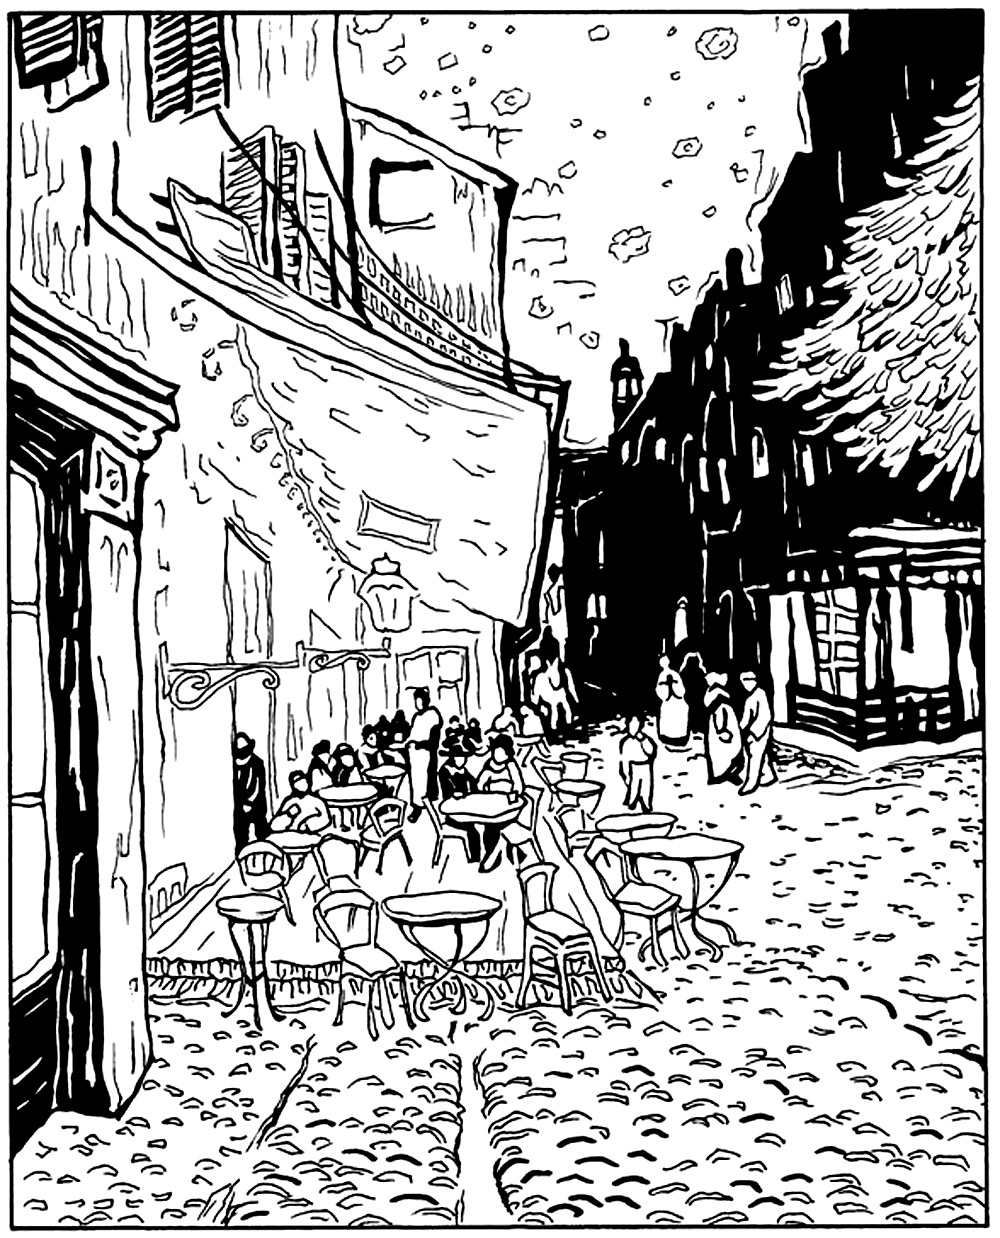 Vincent van gogh   terraza de café de noche - Esta imagen contiene : Van Gogh